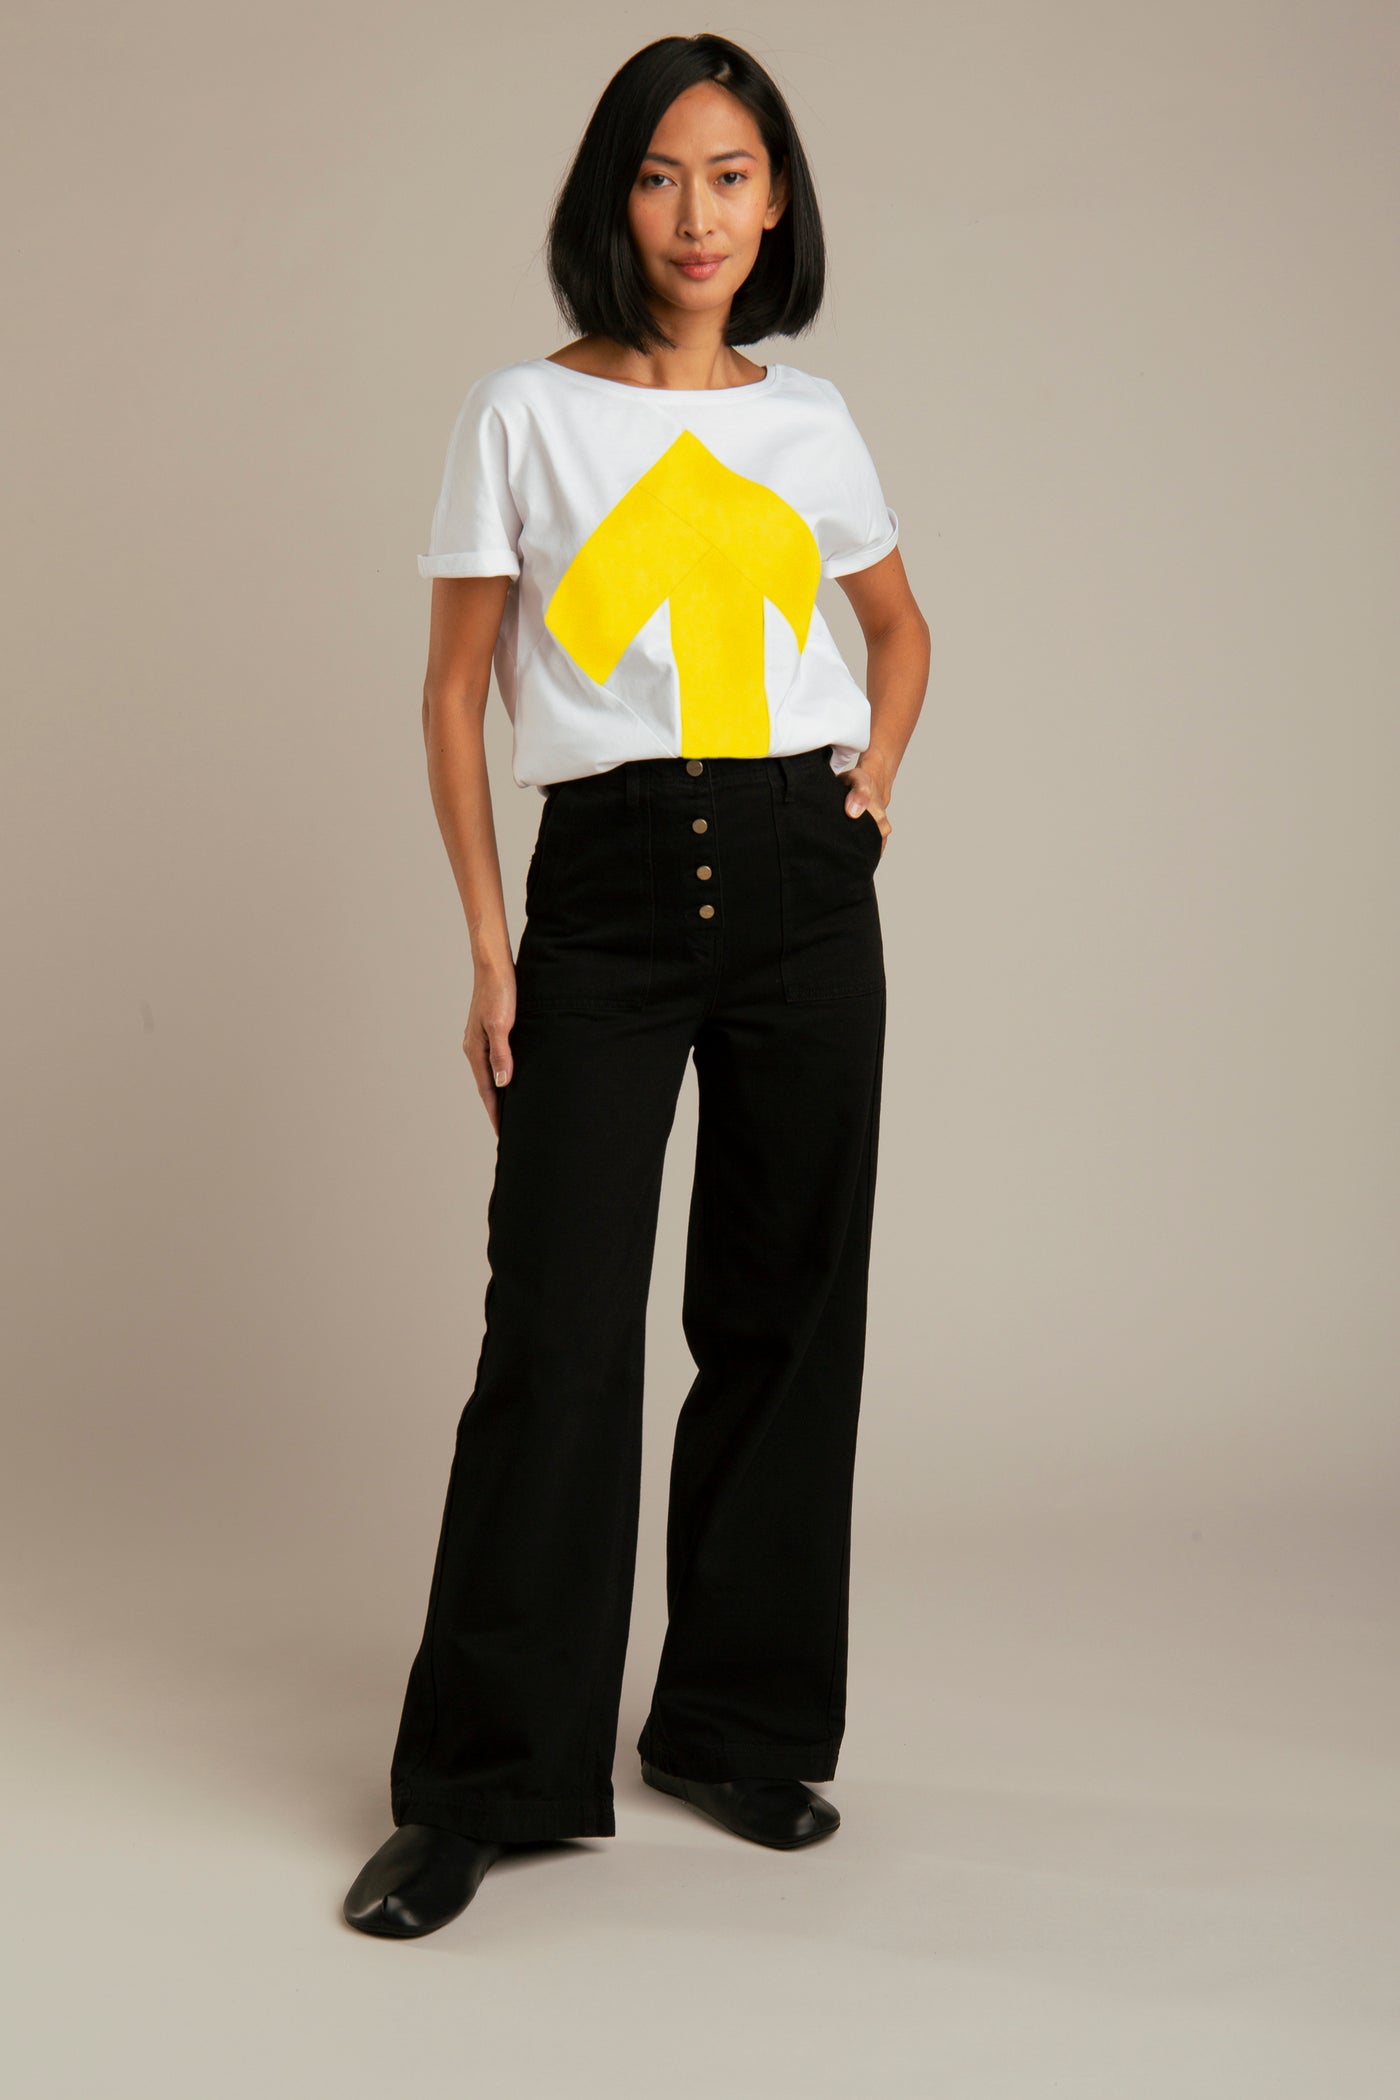 Up-shirt for women | White, yellow